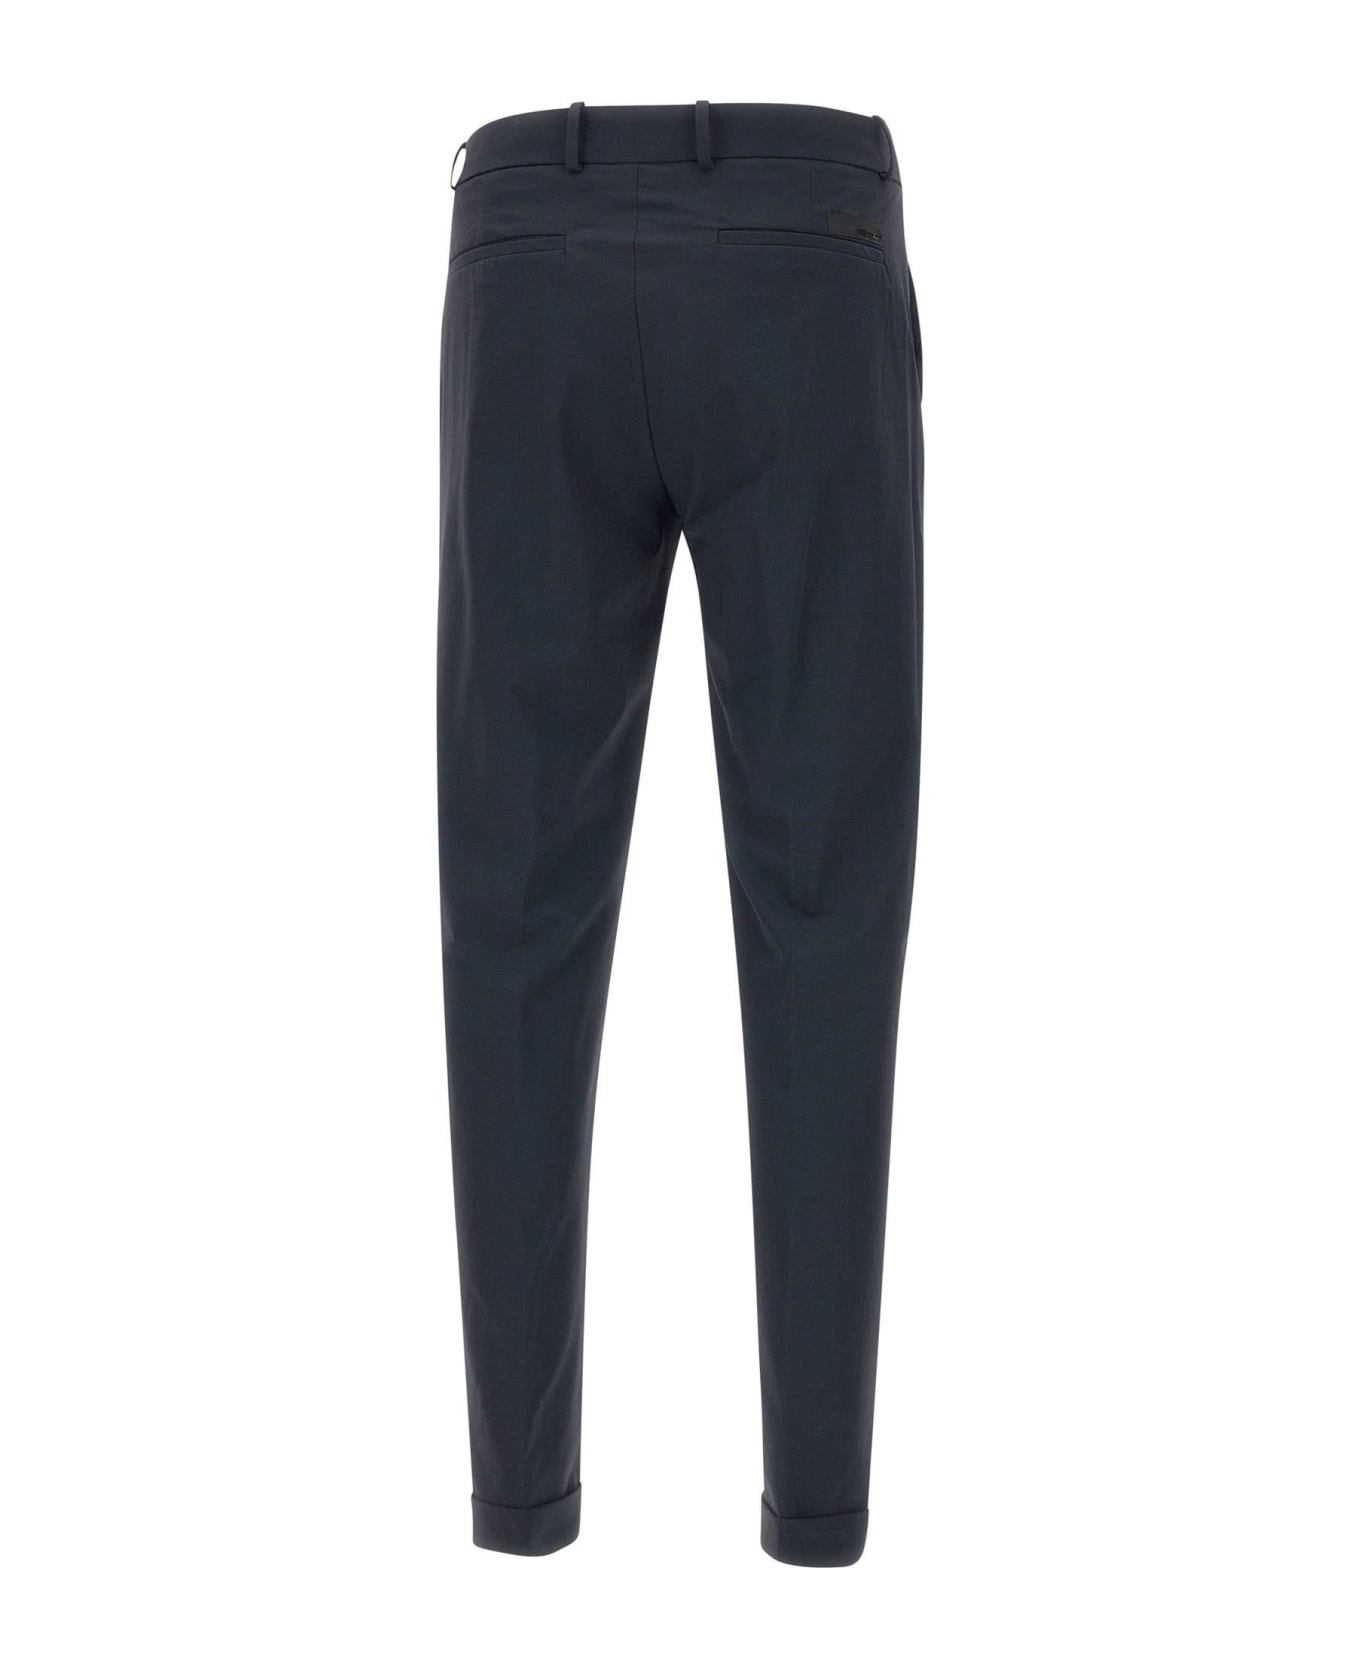 RRD - Roberto Ricci Design Men's Trousers 'revo Chino' - Blue Black